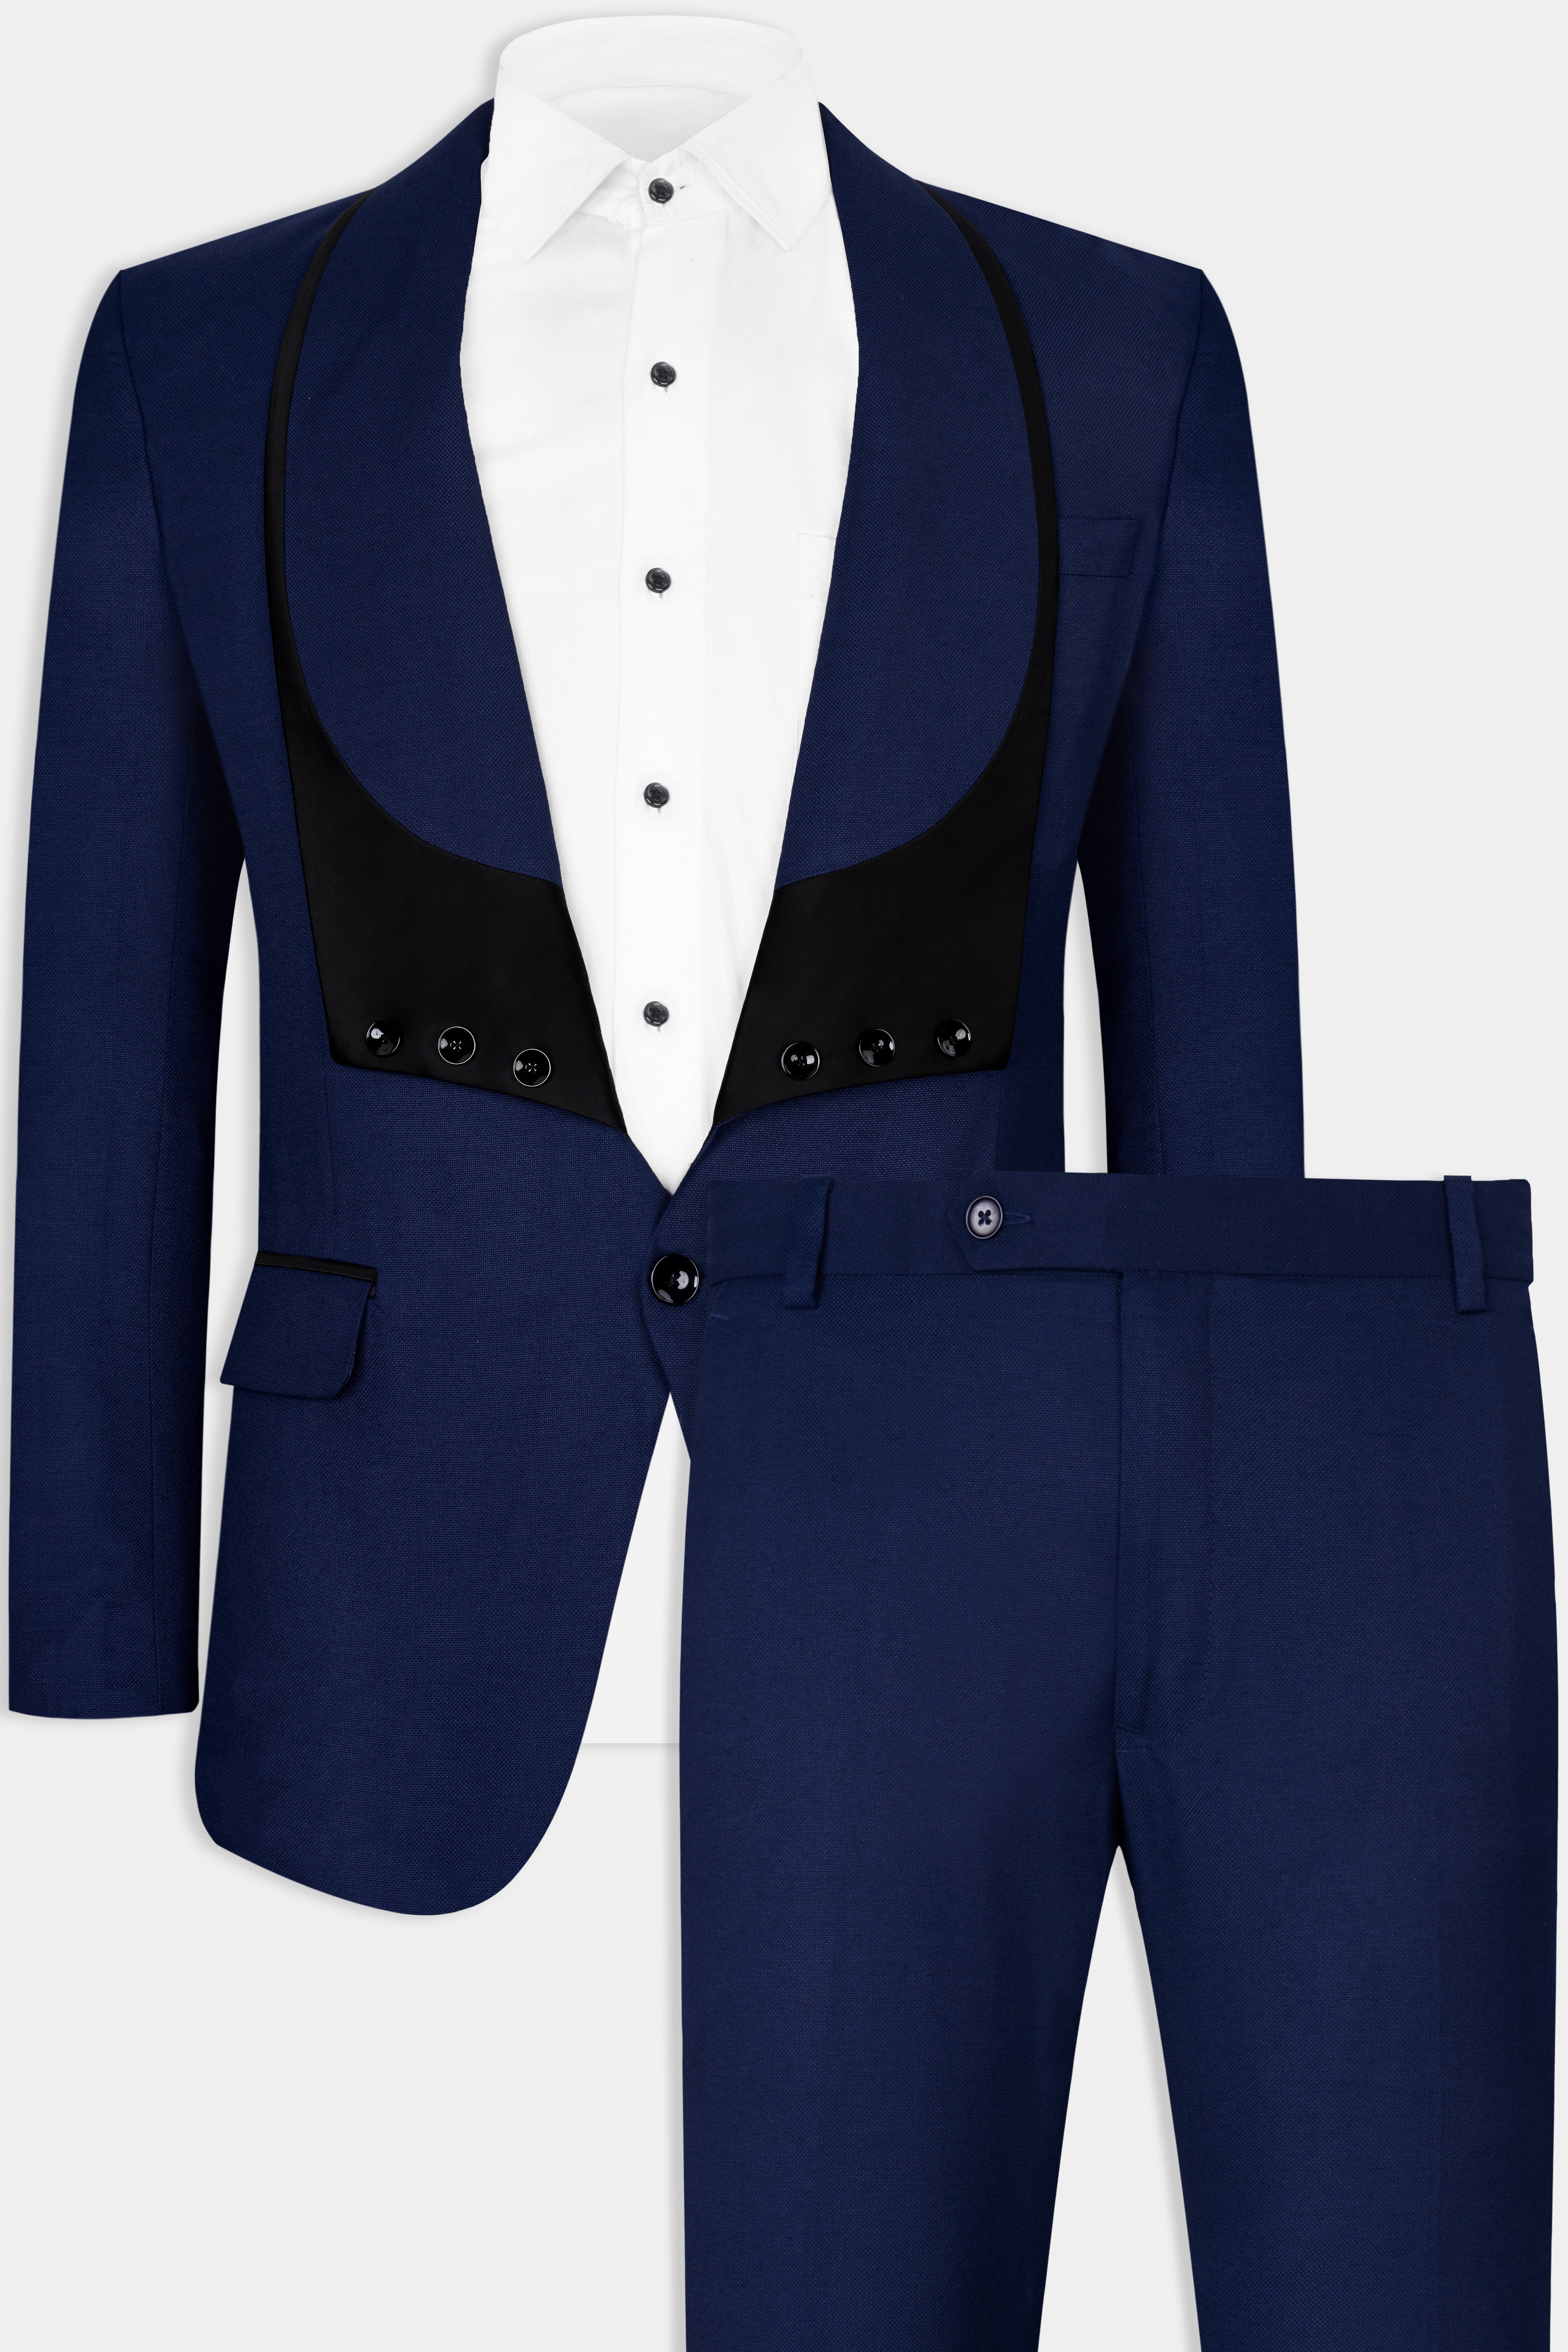 Vulcan Blue Wool Rich Designer Suit ST2852-D328-36, ST2852-D328-38, ST2852-D328-40, ST2852-D328-42, ST2852-D328-44, ST2852-D328-46, ST2852-D328-48, ST2852-D328-50, ST2852-D328-52, ST2852-D328-54, ST2852-D328-56, ST2852-D328-58, ST2852-D328-60